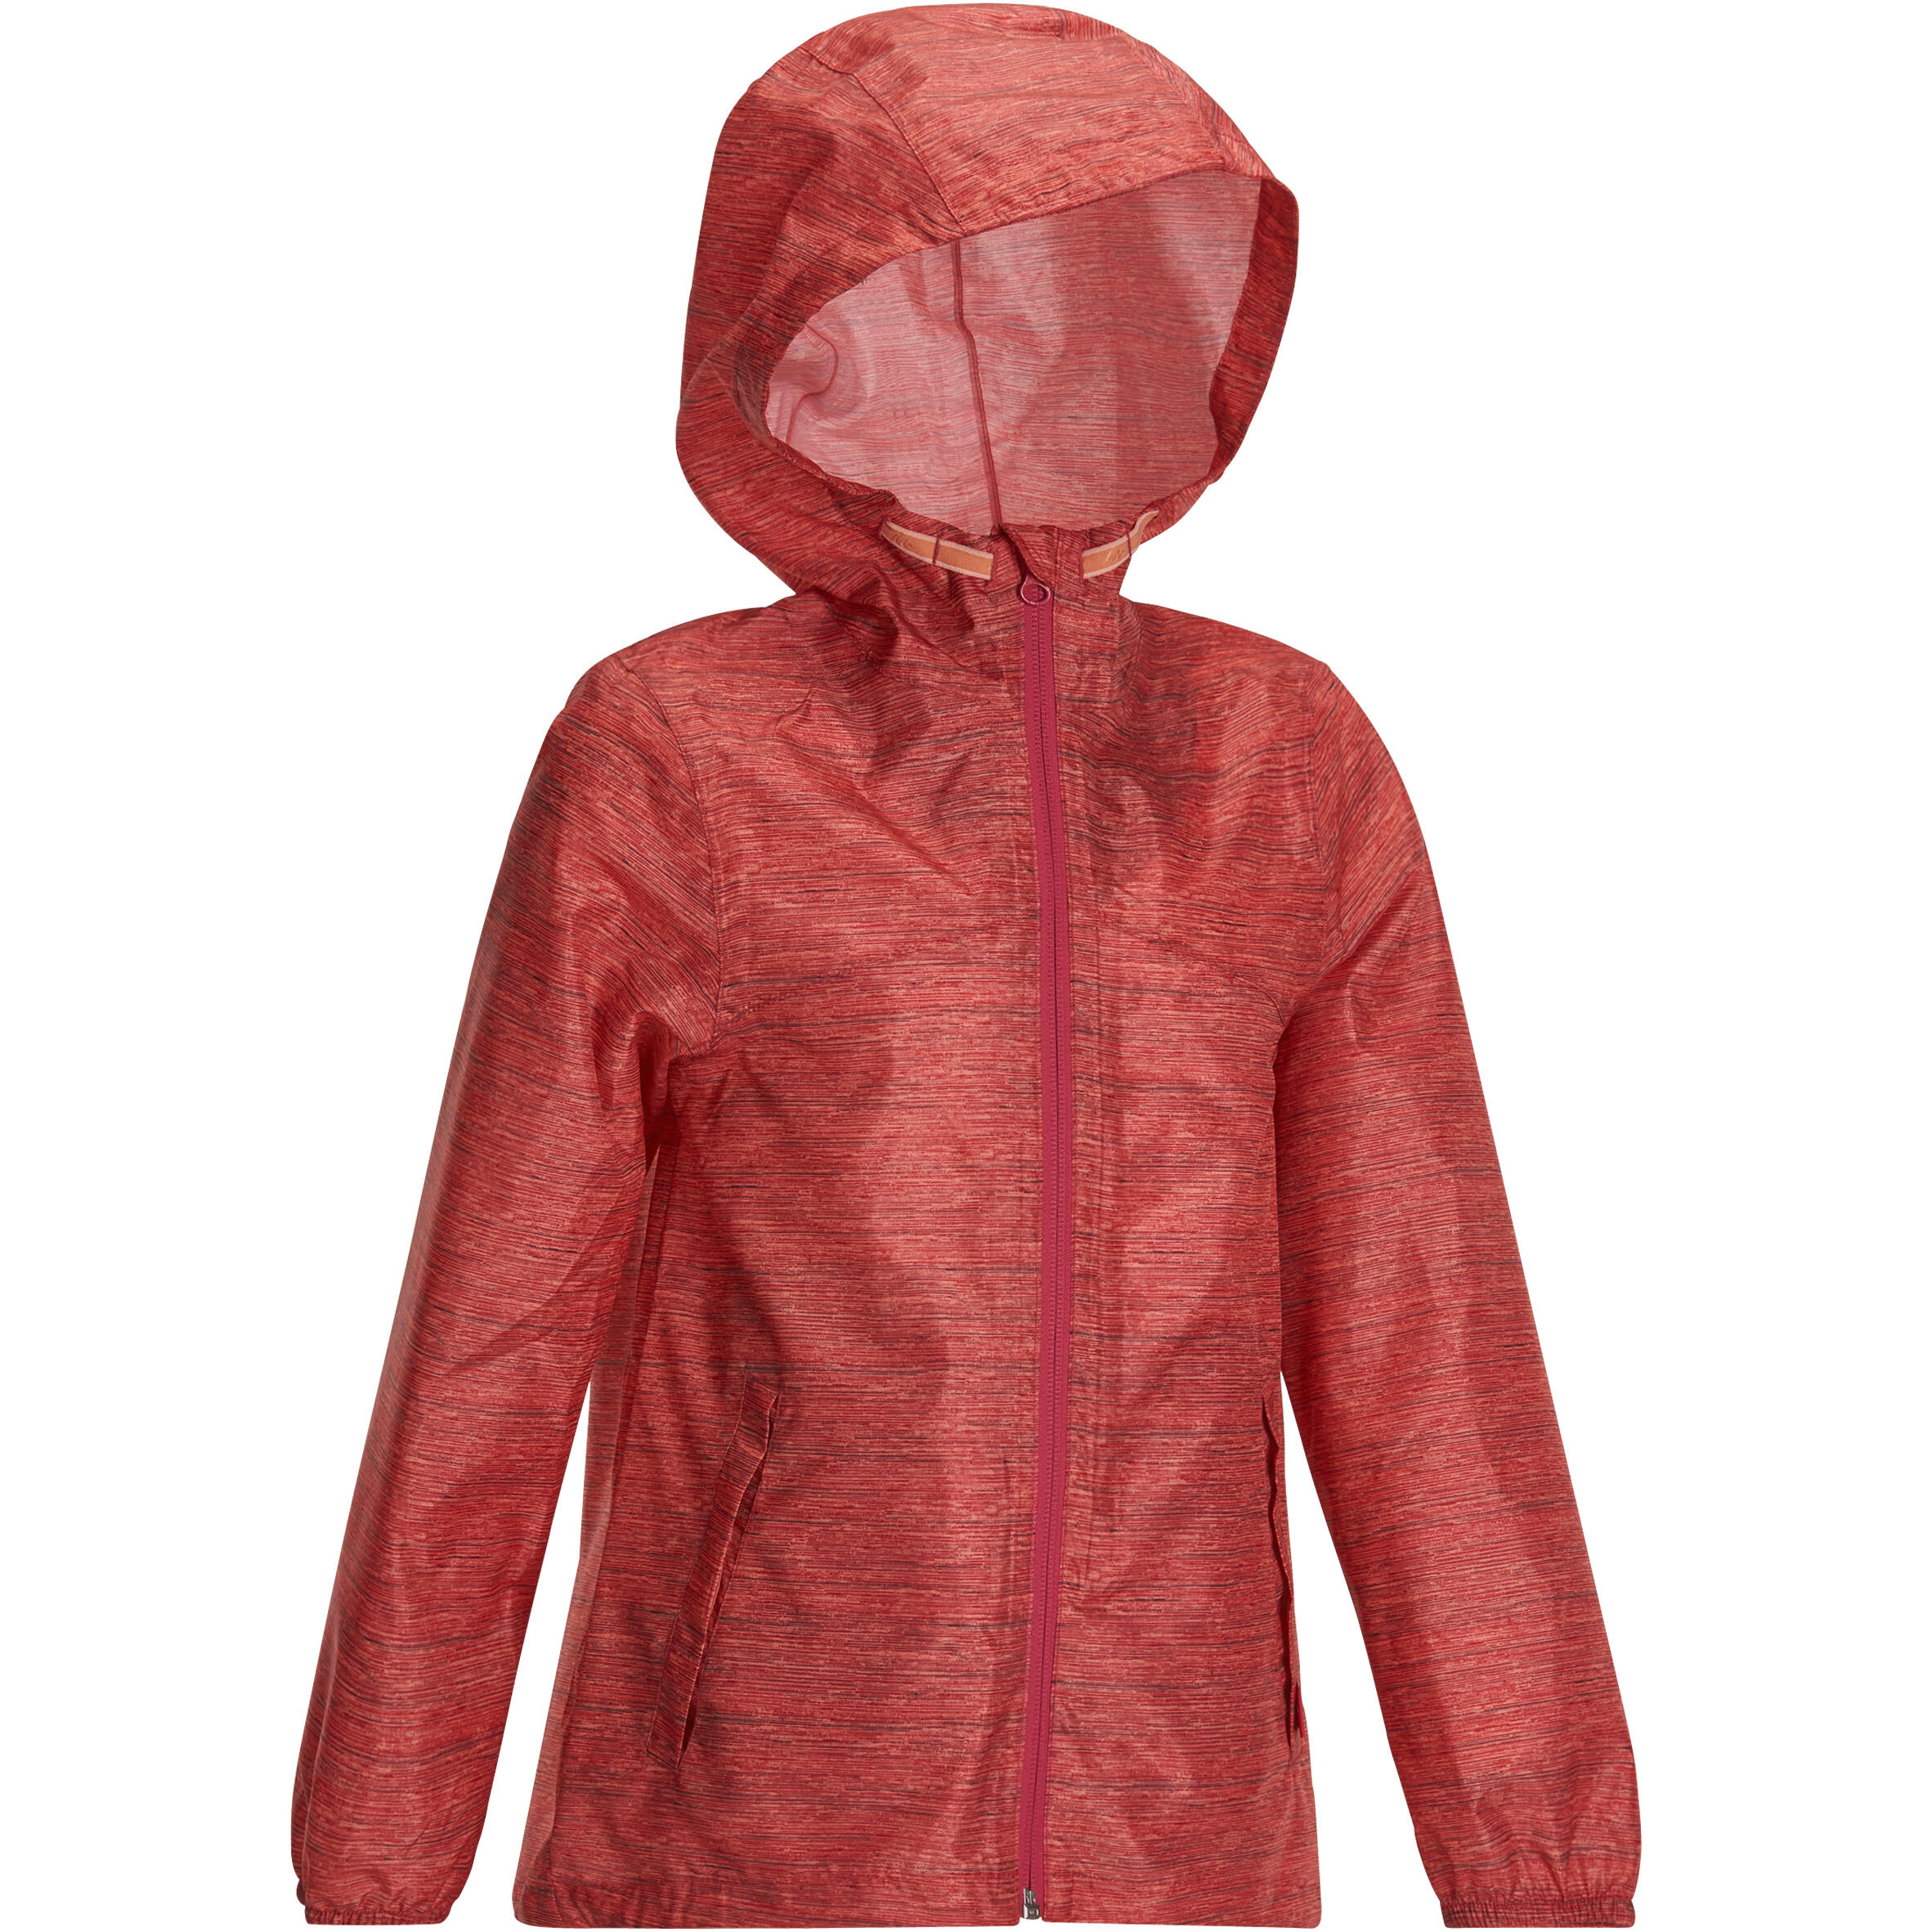 Hike 100 Girl's Waterproof Hiking Jacket - Pink 2/15